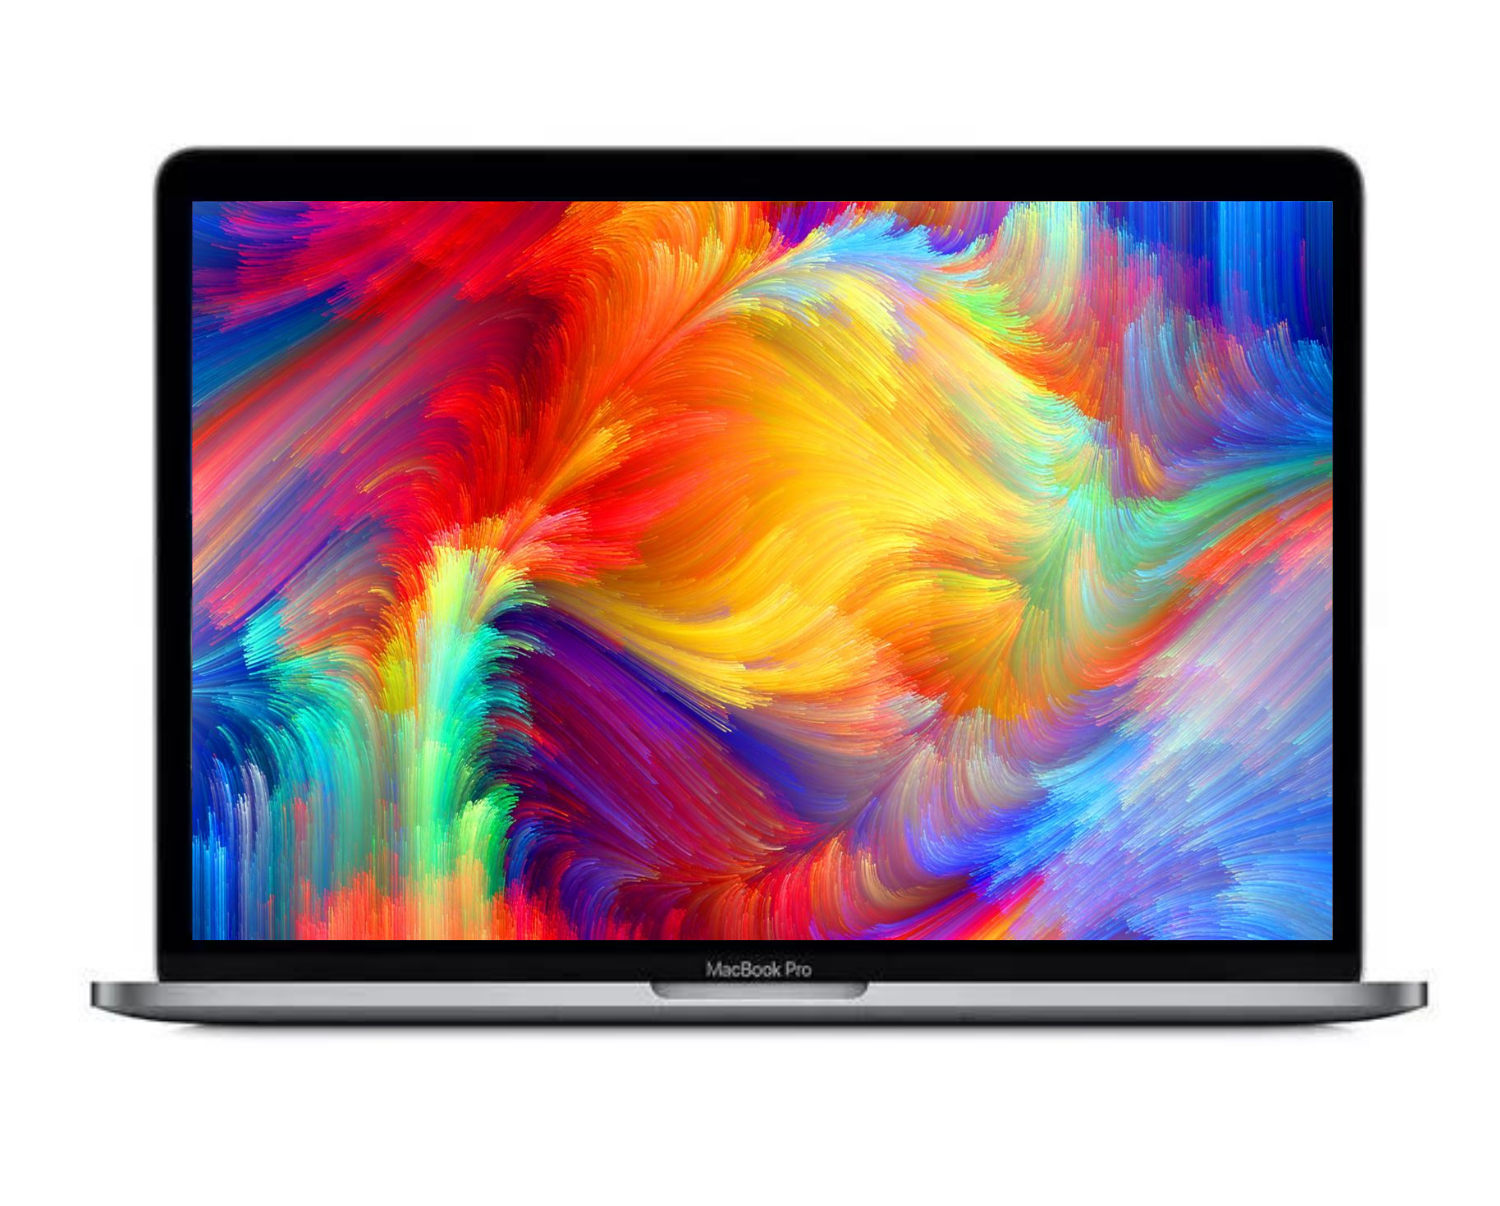 MacBook Pro 13in 2016 i5 8GB 256GB A1708